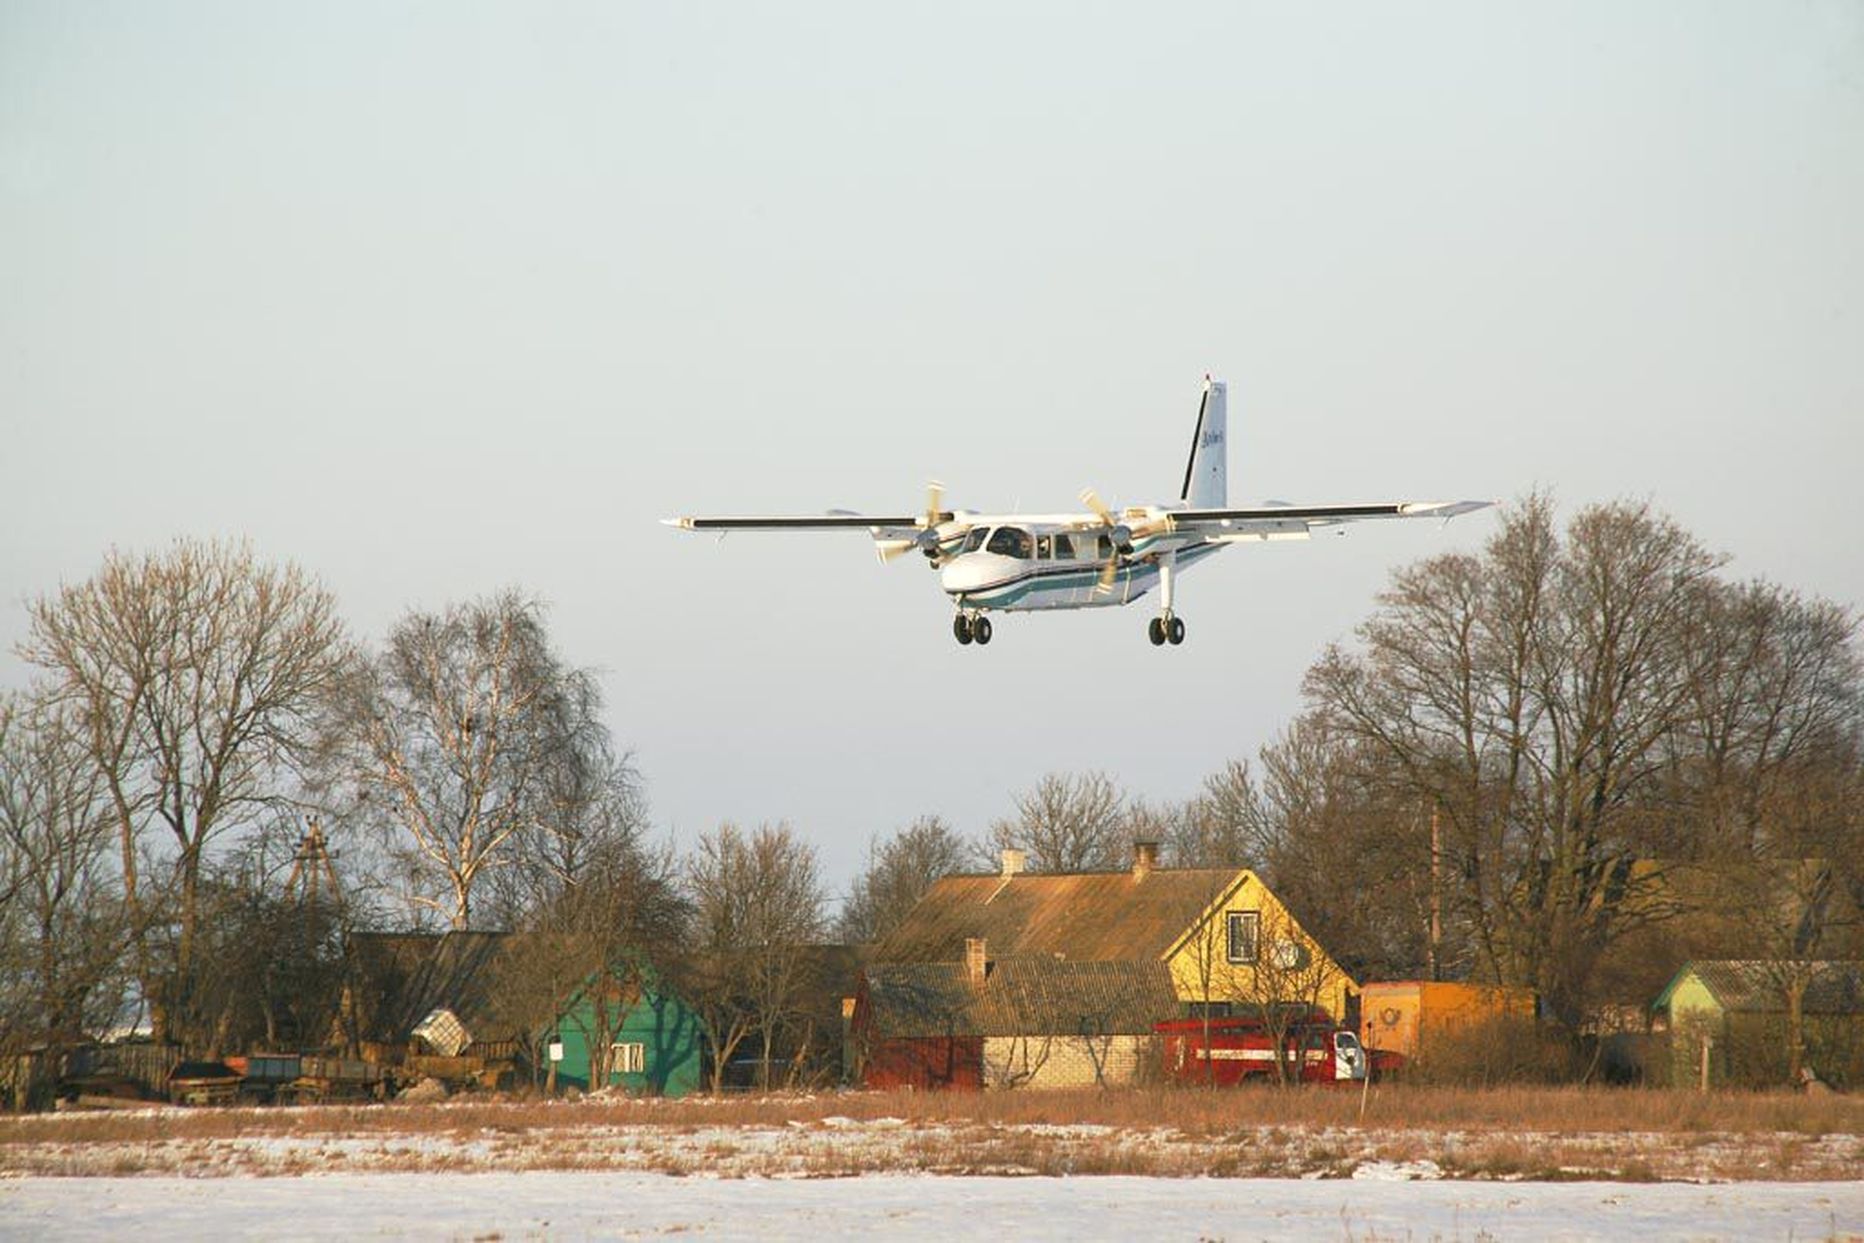 Kihnu lennuvälja rajale paigaldati 2007. aastal kärgkate, mis parandas lennuühenduse pidamist saarega, kuid ilmastiku muutmine ei allu inimvõimetele. Pildil maandub Kihnus kaheksakohaline AS Aviesi lennuk.